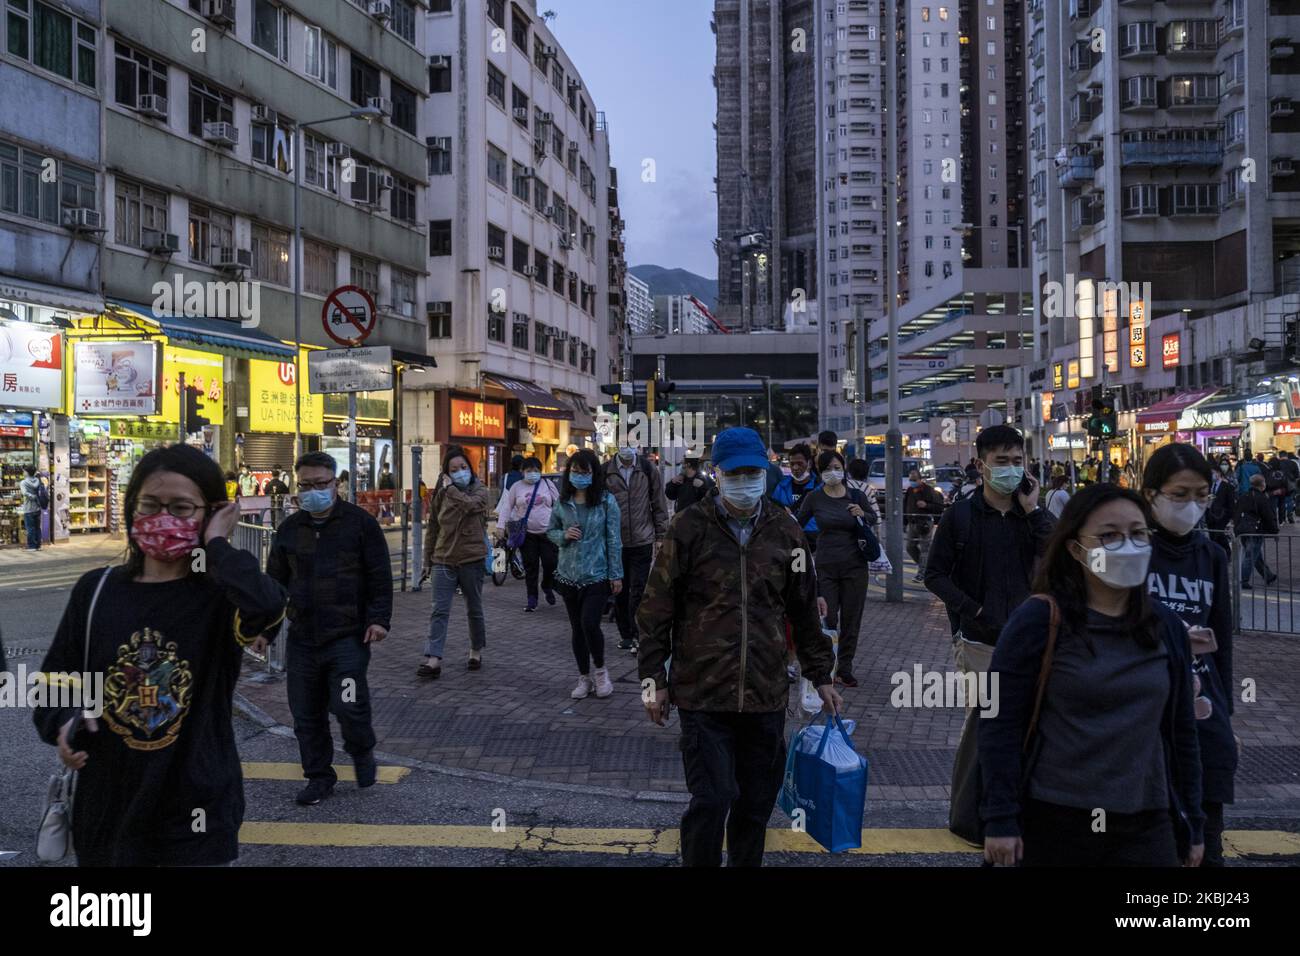 Fußgänger werden am 27. Februar 2020 in Hongkong, China, maskiert gesehen, als sie die Straße überqueren. Das Coronavirus oder Covid-19, das aus Wuhan China stammt, hat bis heute über 82.000 infiziert und 2810 weltweit getötet. (Foto von Vernon Yuen/NurPhoto) Stockfoto